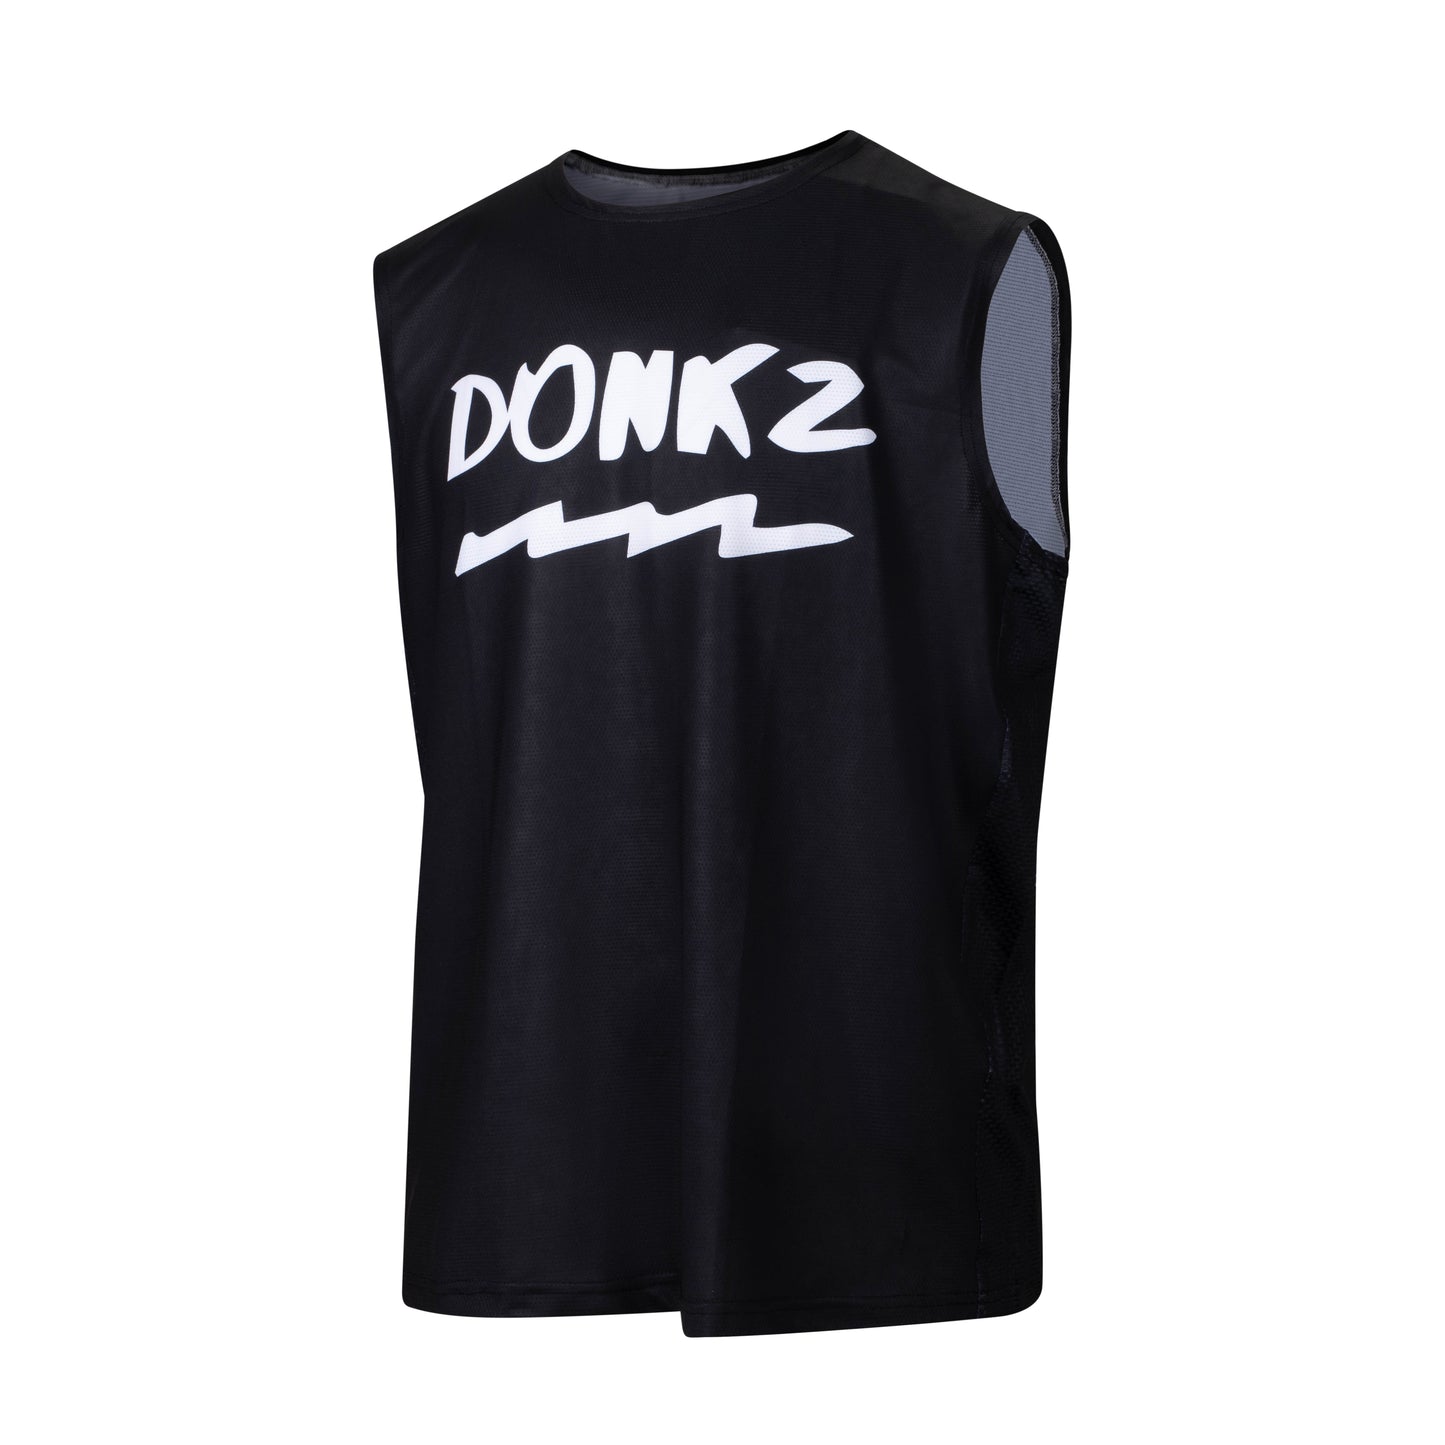 Black MX/Enduro Vest with white Donkz logo and detailing 